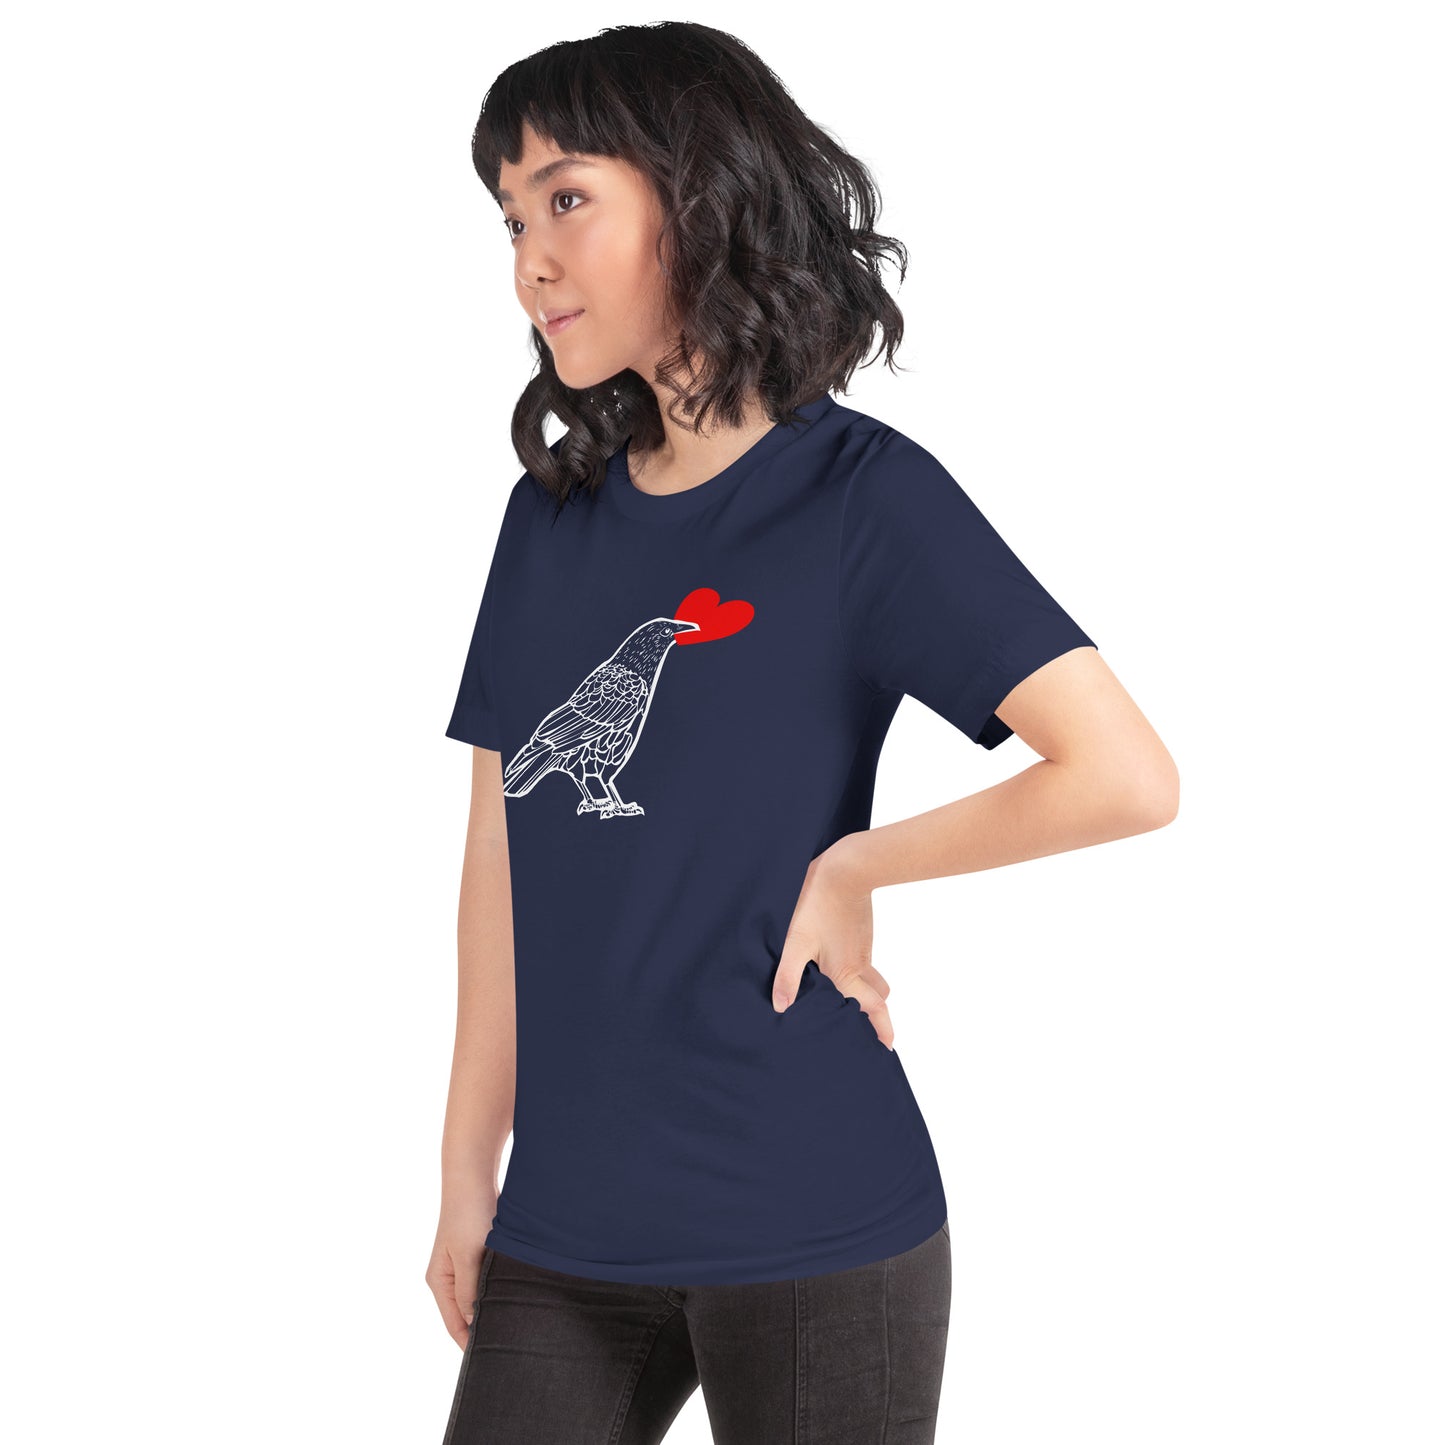 BellavanceInk: Standing Crow Holding A Heart Short Sleeve T-Shirt